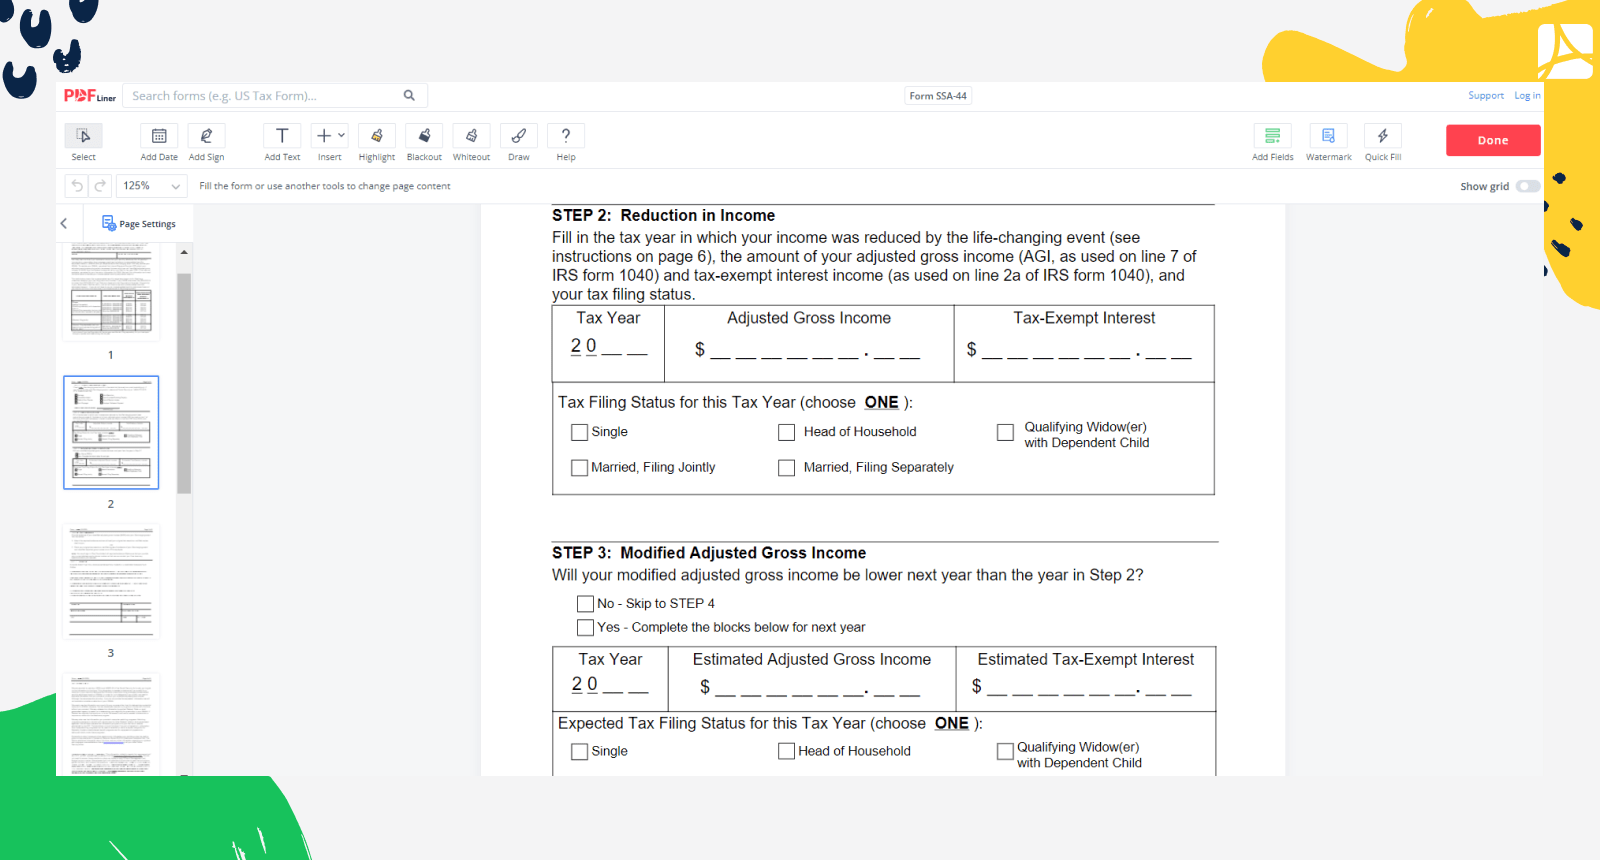 Fill Form SSA-44 on PDFLiner